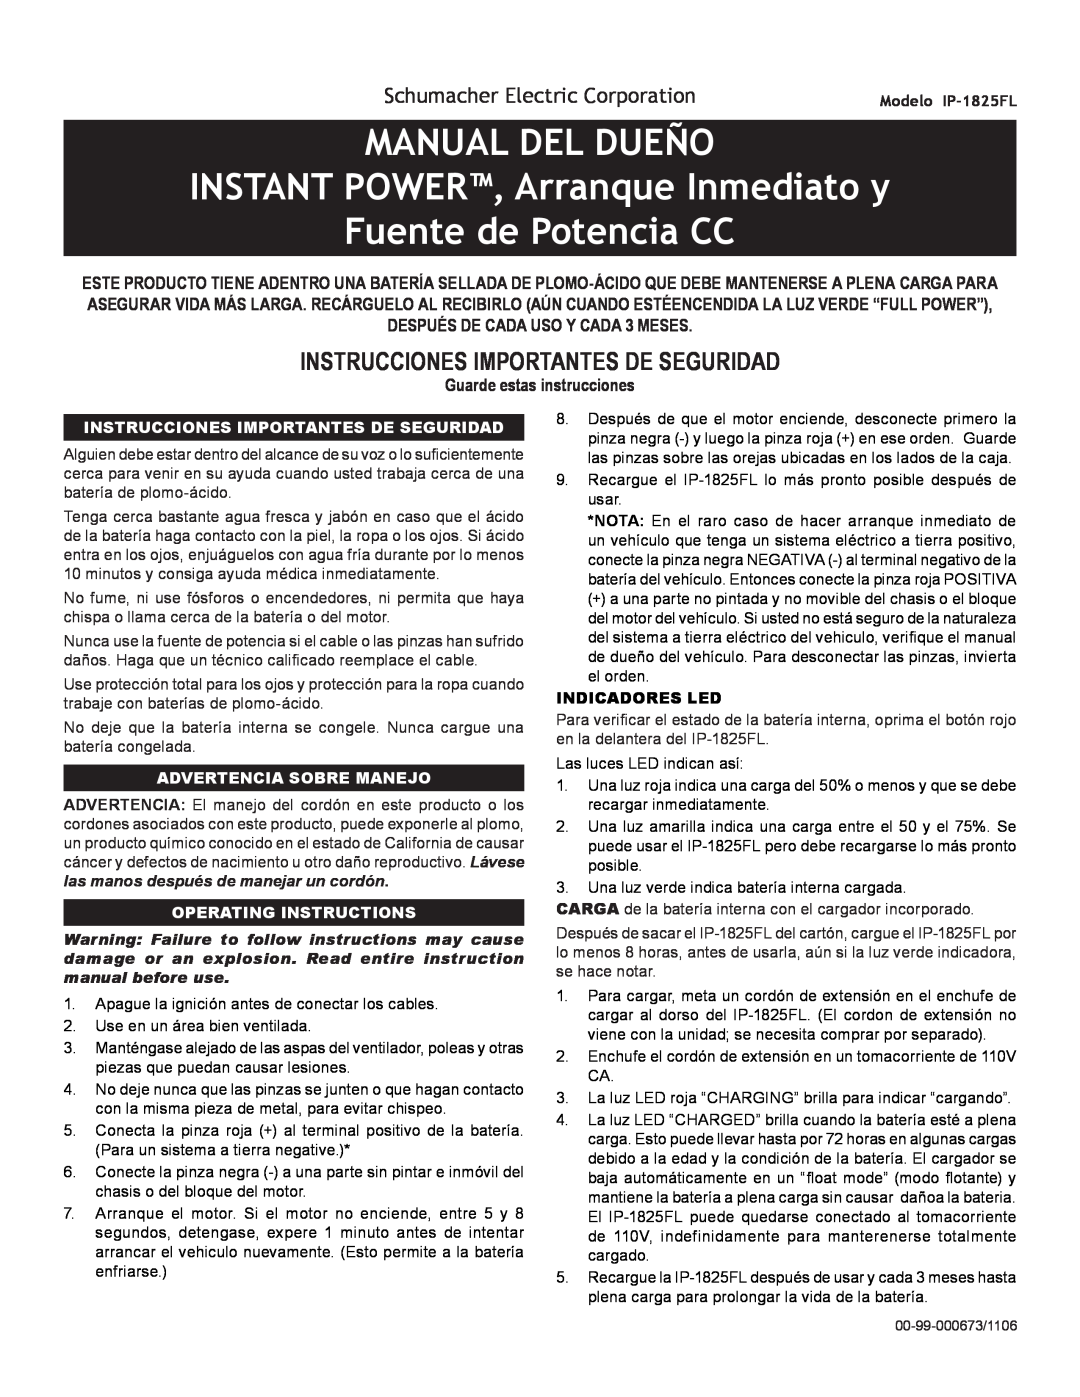 Schumacher IP-1825FL MANUAL DEL DUEÑO INSTANT POWER, Arranque Inmediato y, Fuente de Potencia CC, Advertencia Sobre Manejo 